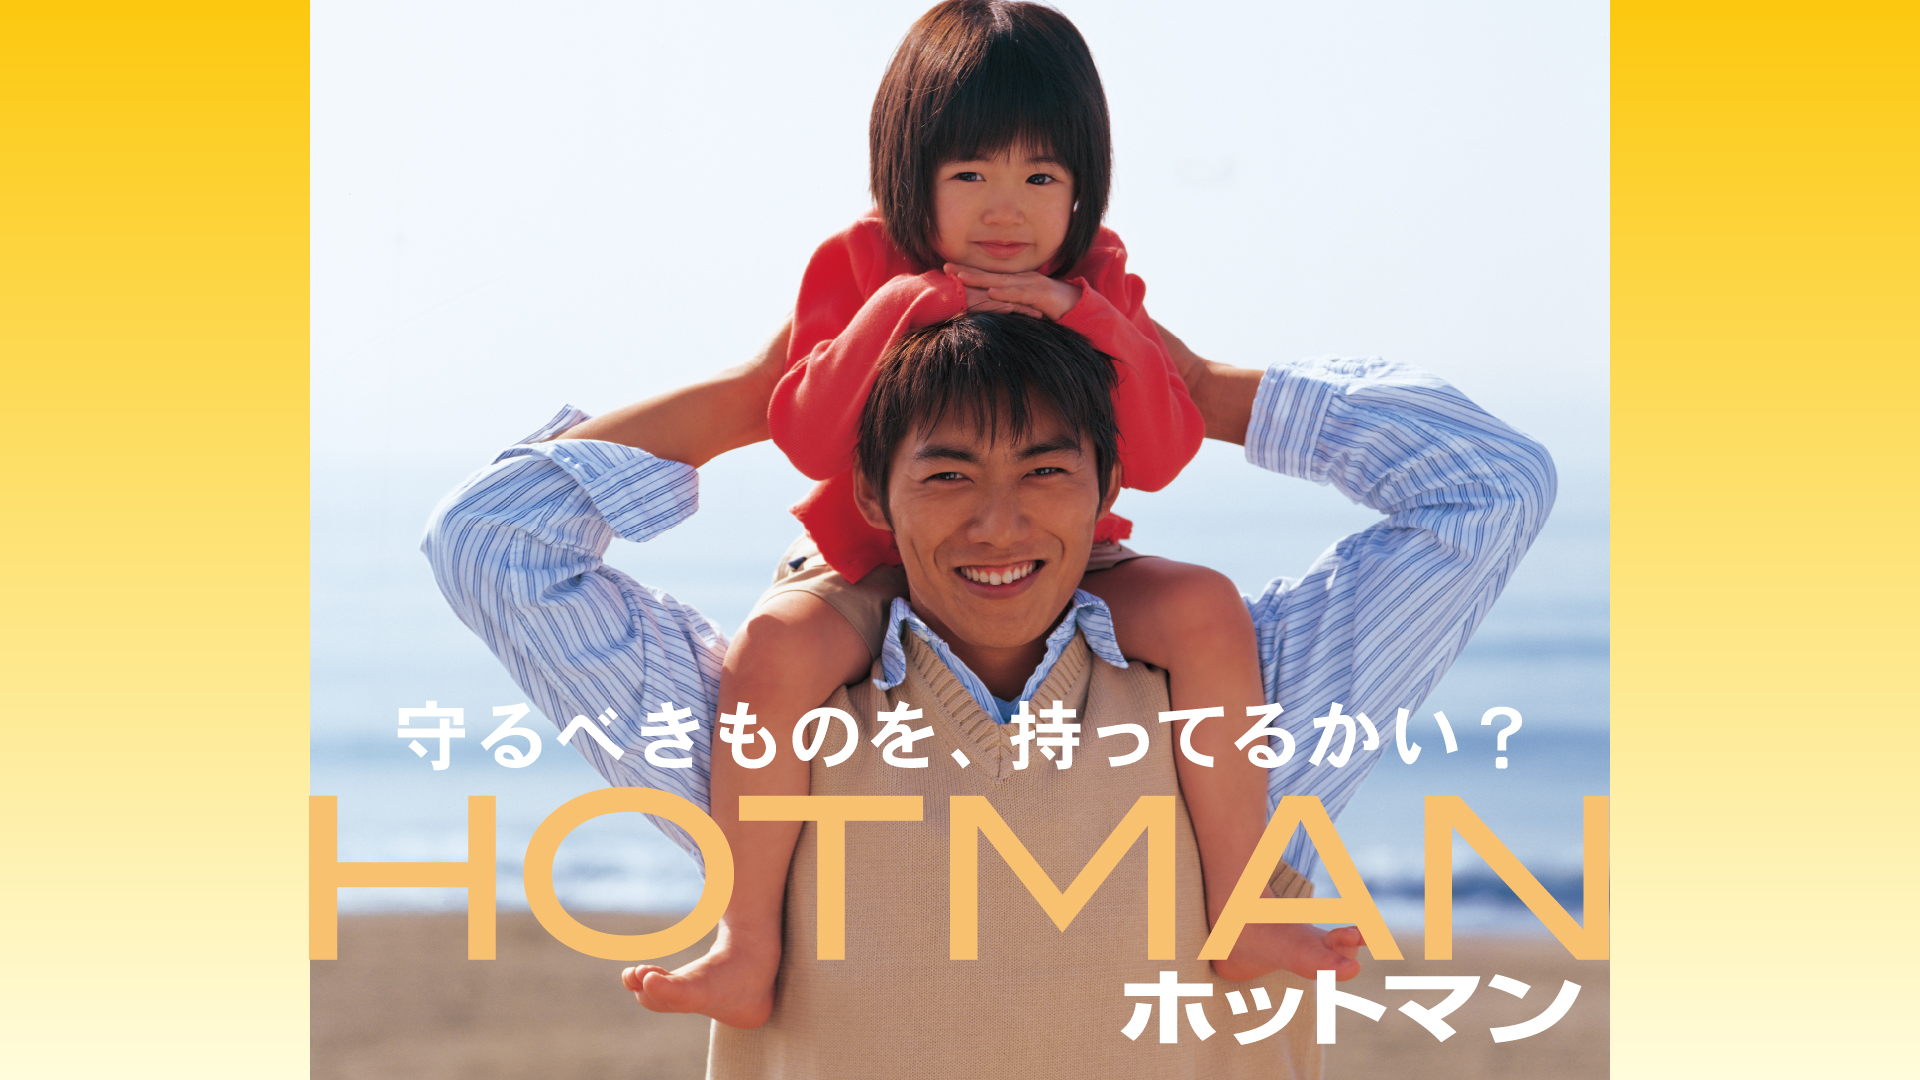 DVD全12巻セット ホットマン + ホットマン2 +04春スペシャル 反町隆史 